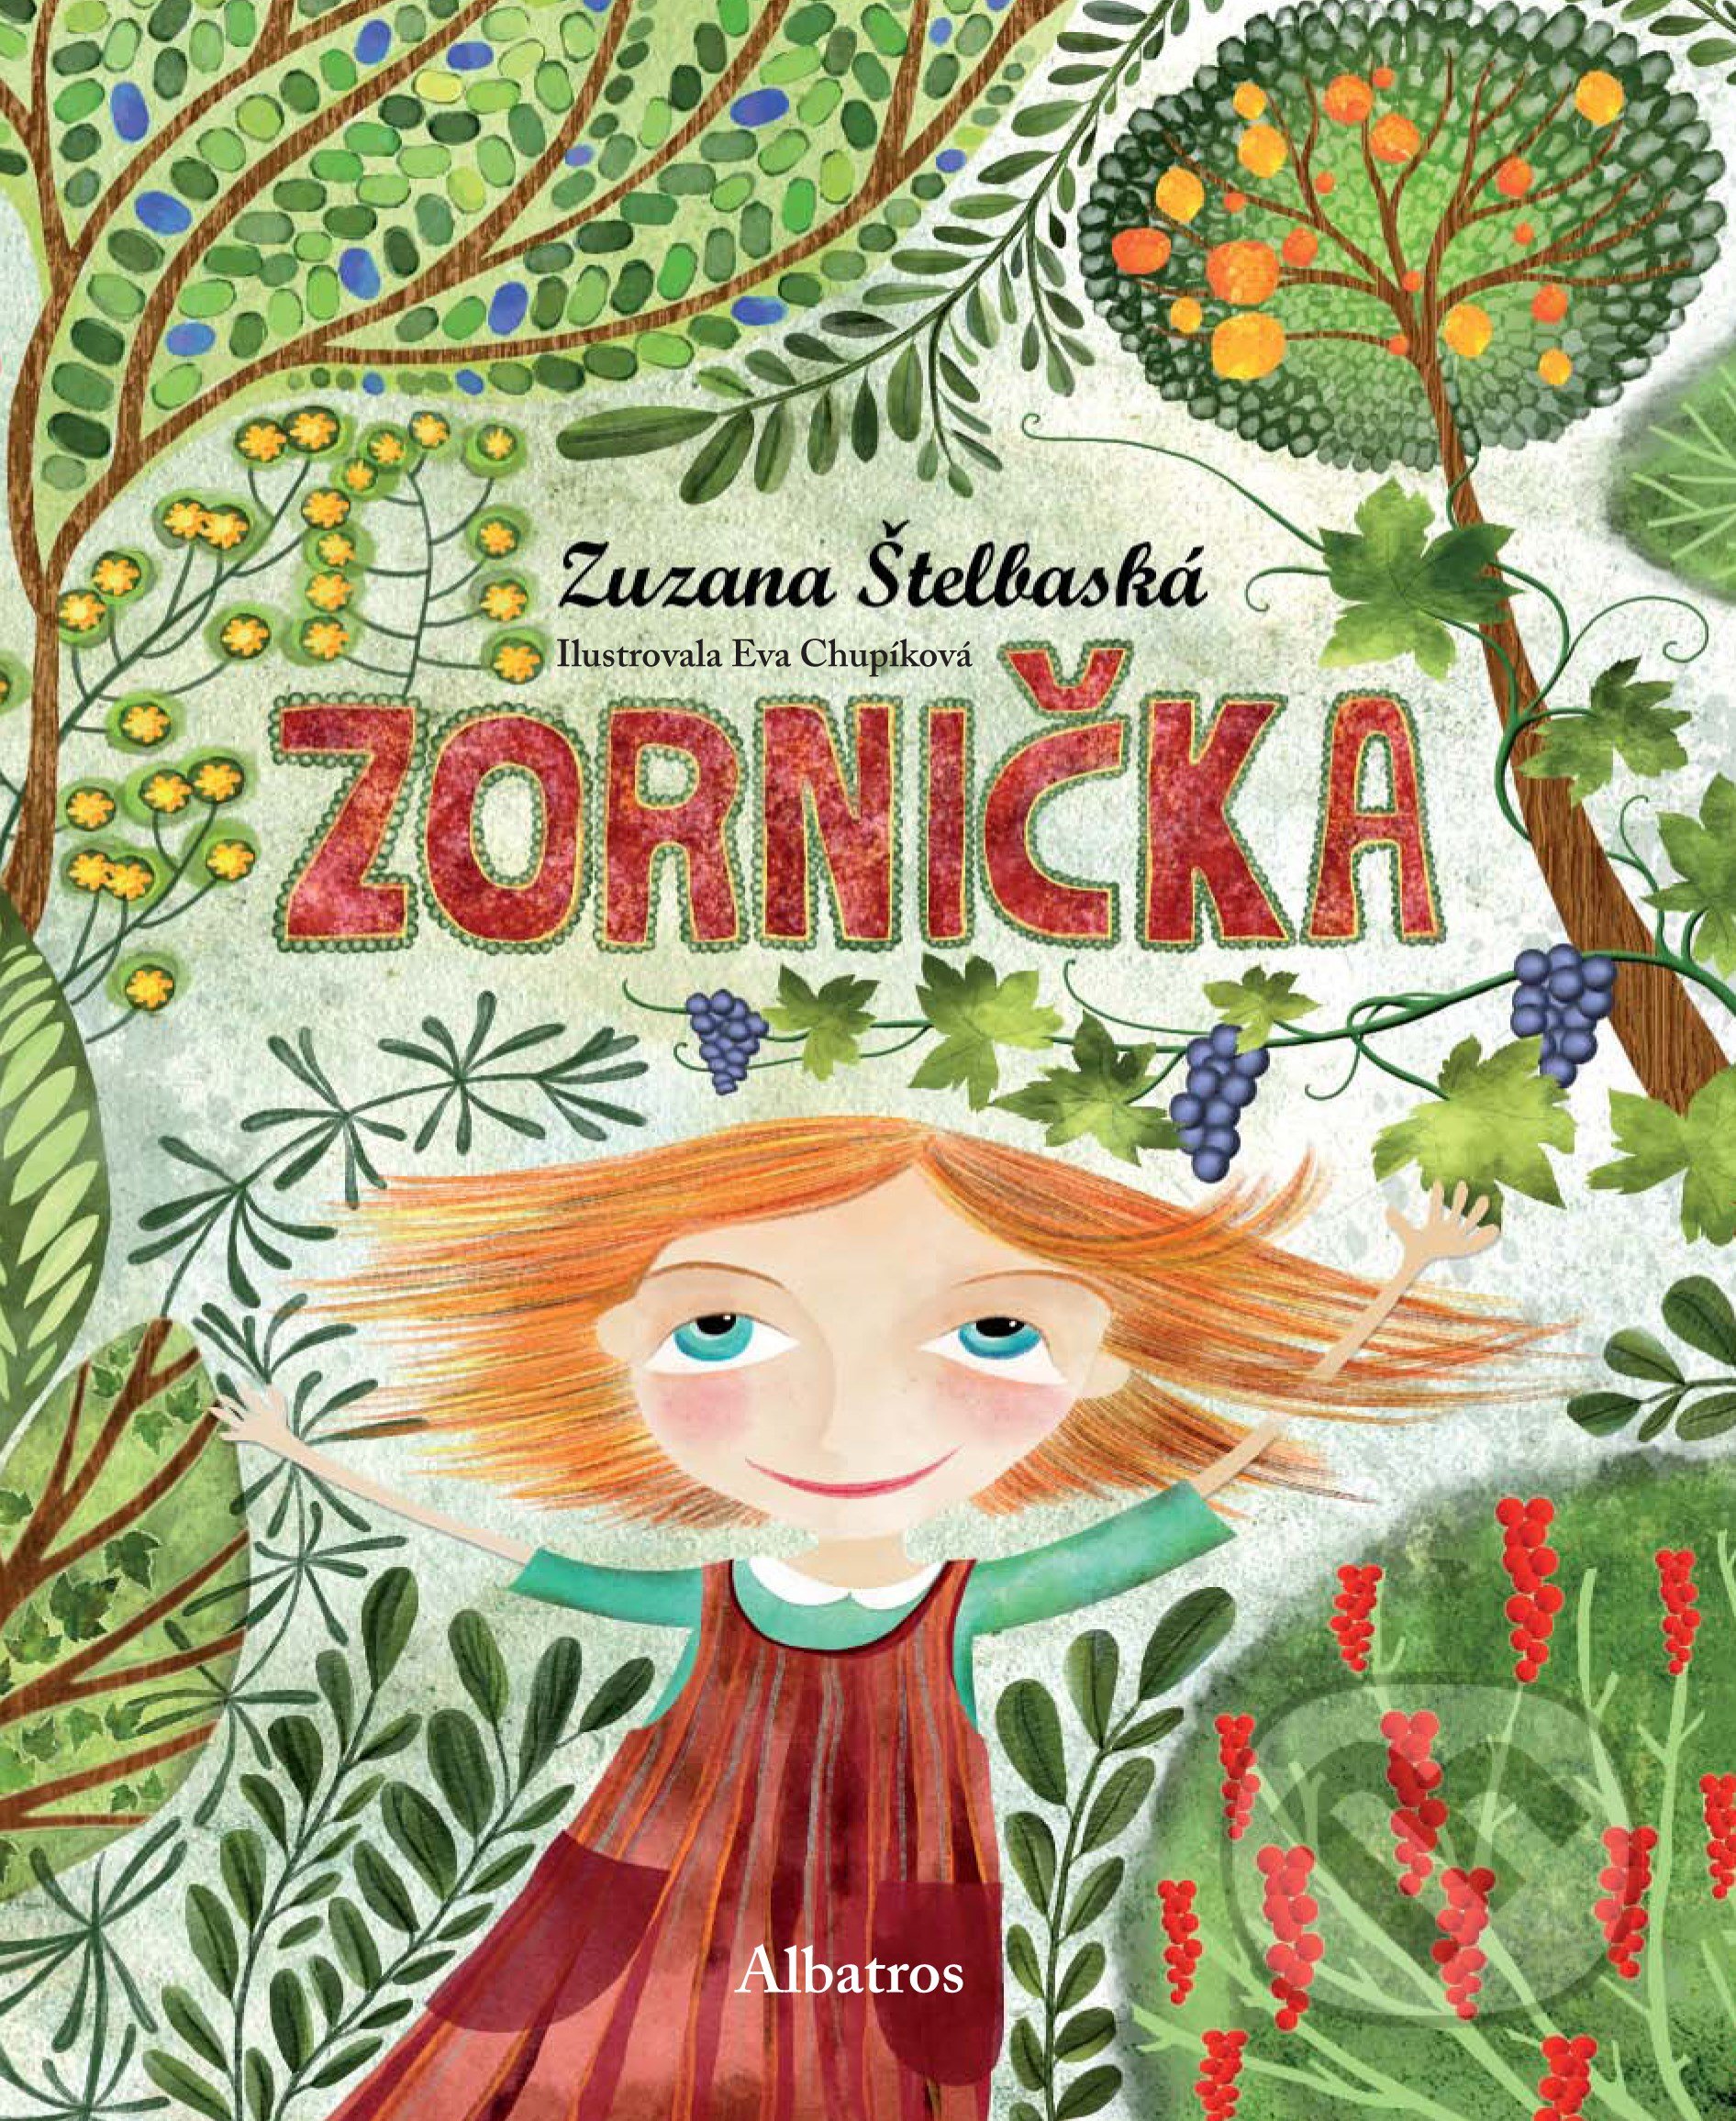 Zornička - Zuzana Štelbaská, Eva Chupíková (ilustrátor), Albatros SK, 2021